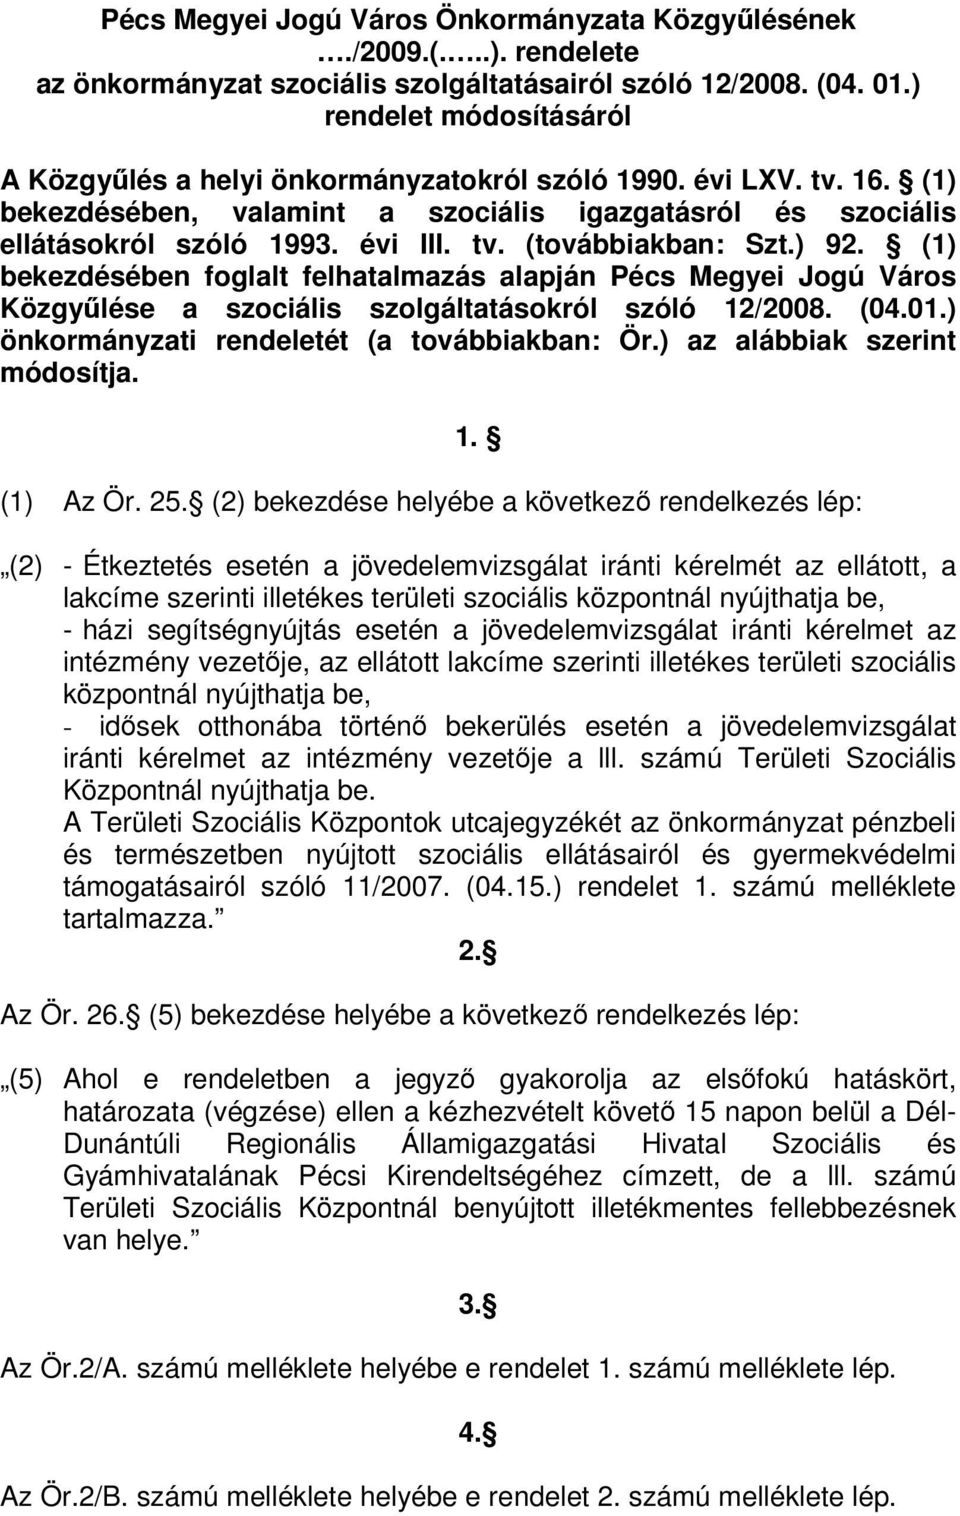 ) 92. (1) bekezdésében foglalt felhatalmazás alapján Pécs Megyei Jogú Város Közgylése a szociális szolgáltatásokról szóló 12/2008. (04.01.) önkormányzati rendeletét (a továbbiakban: Ör.